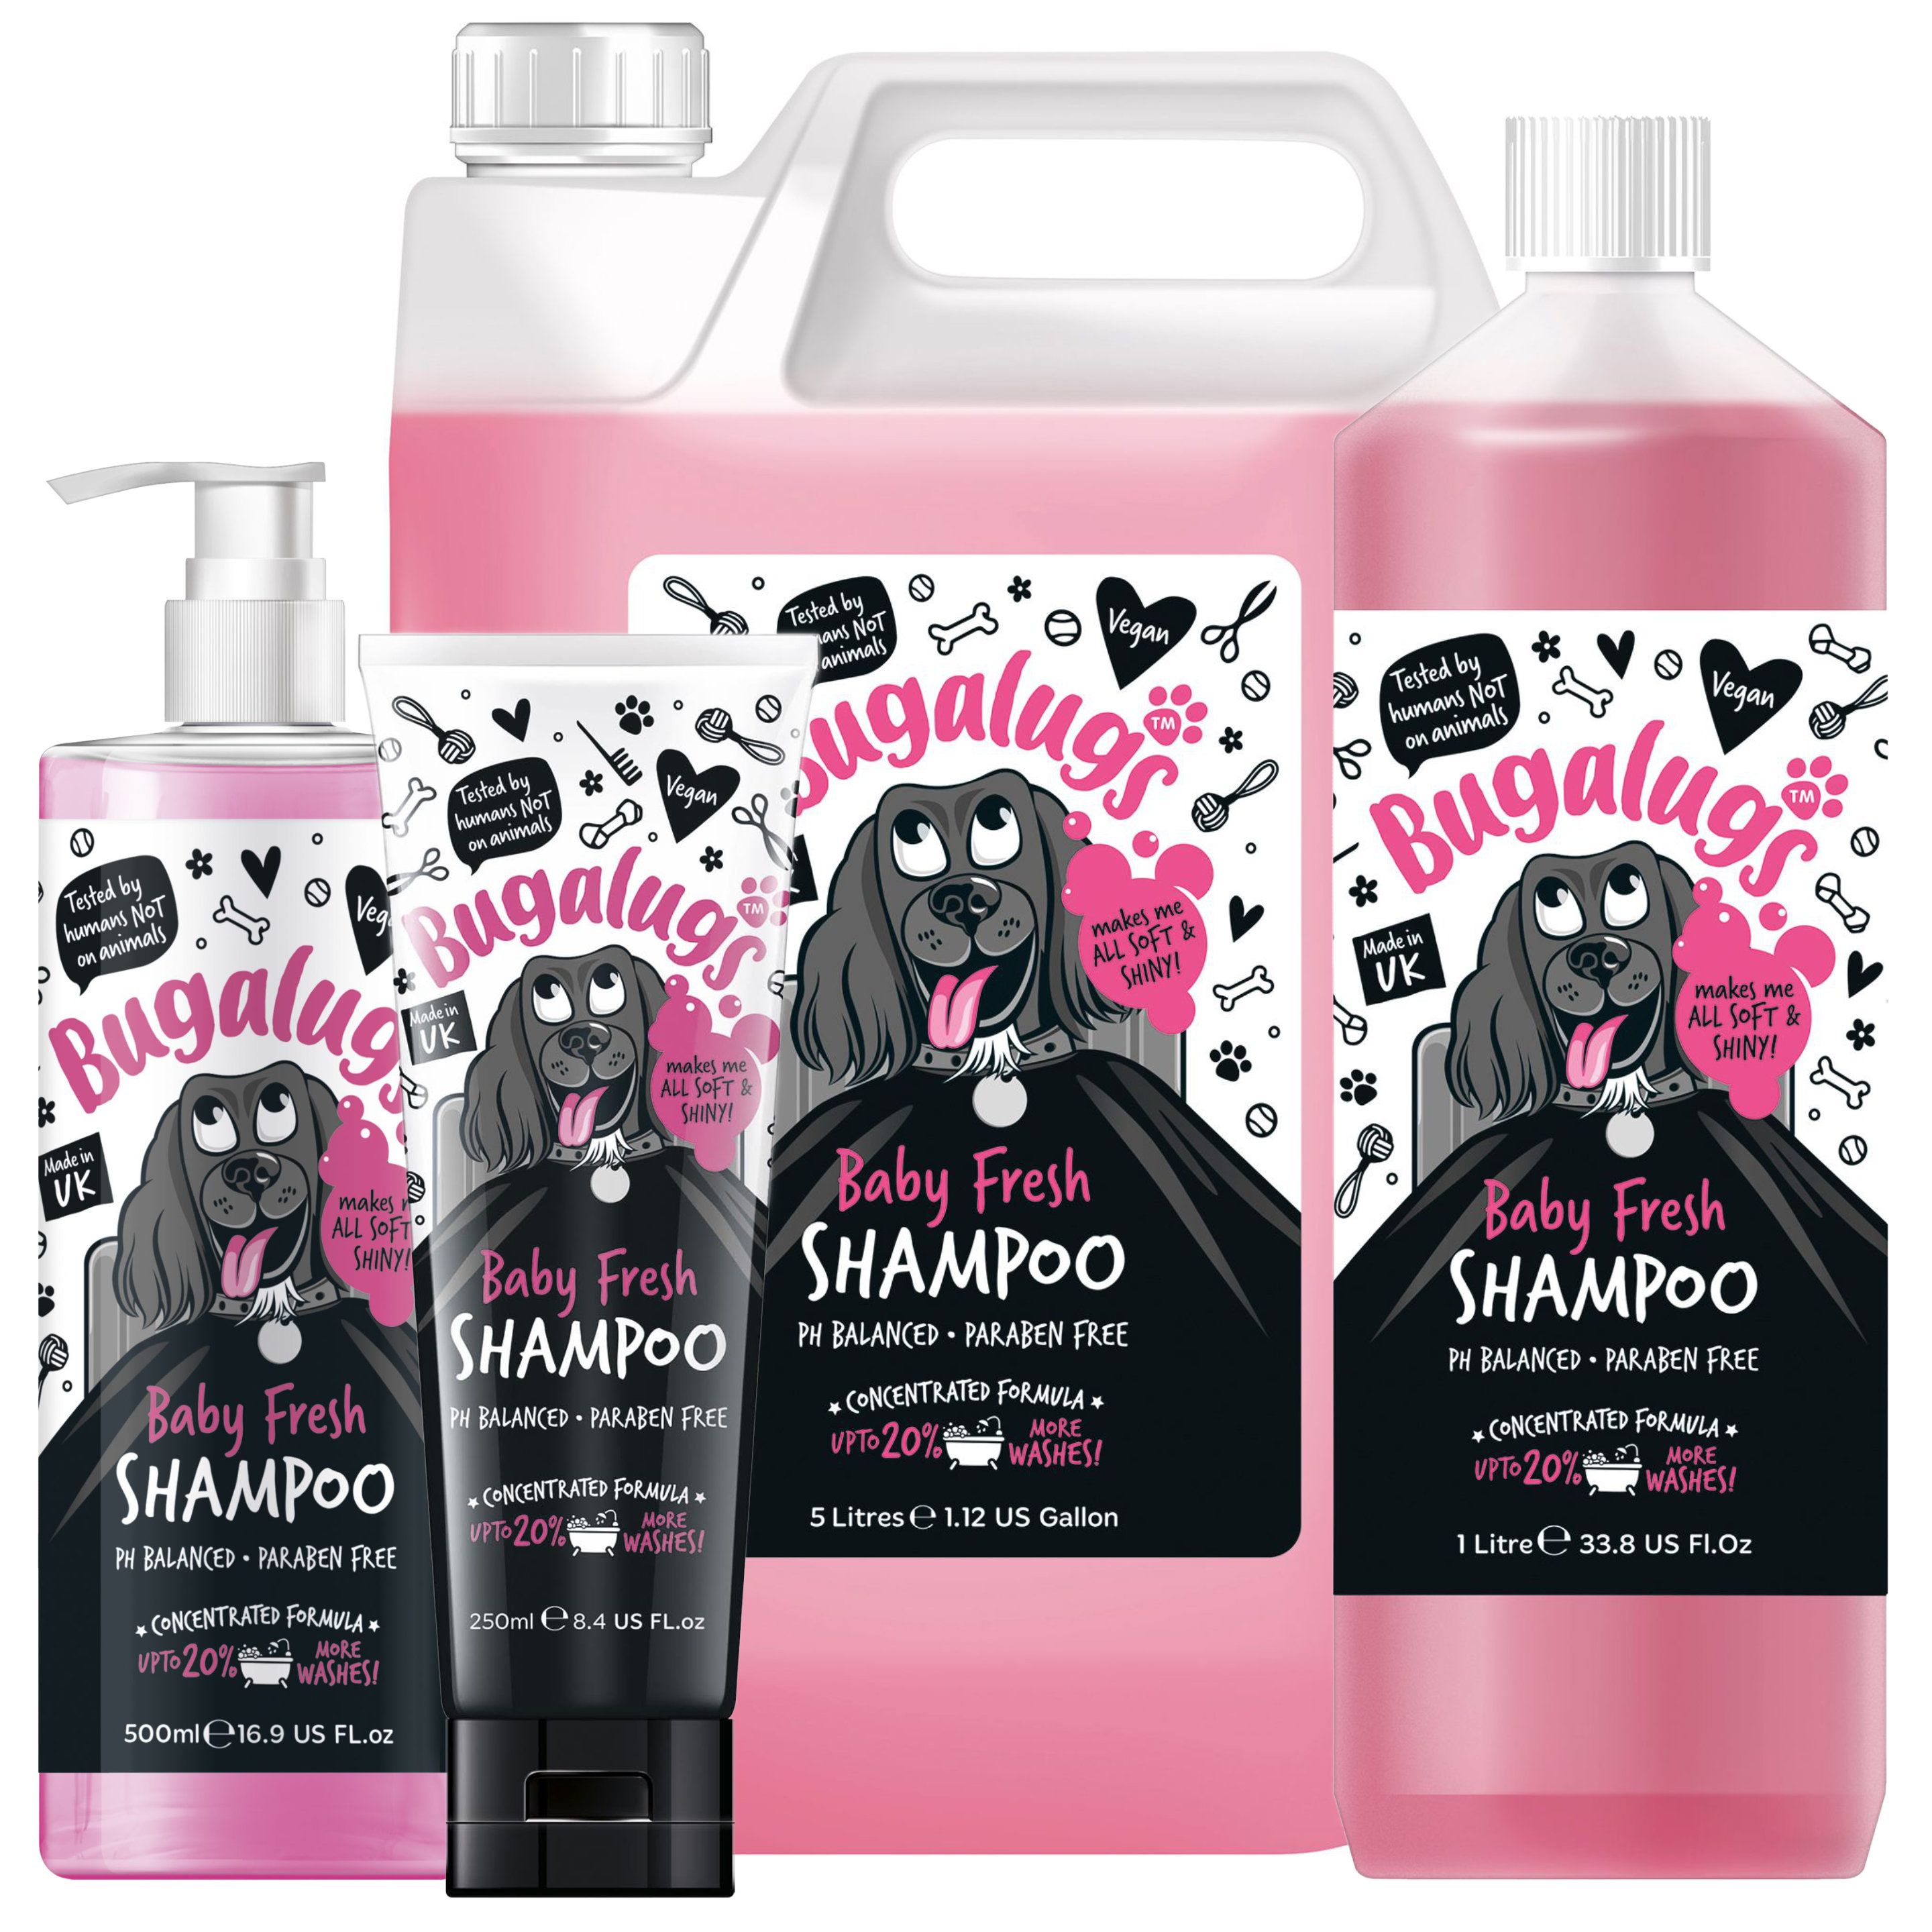 fresh line szampon dla psów skład